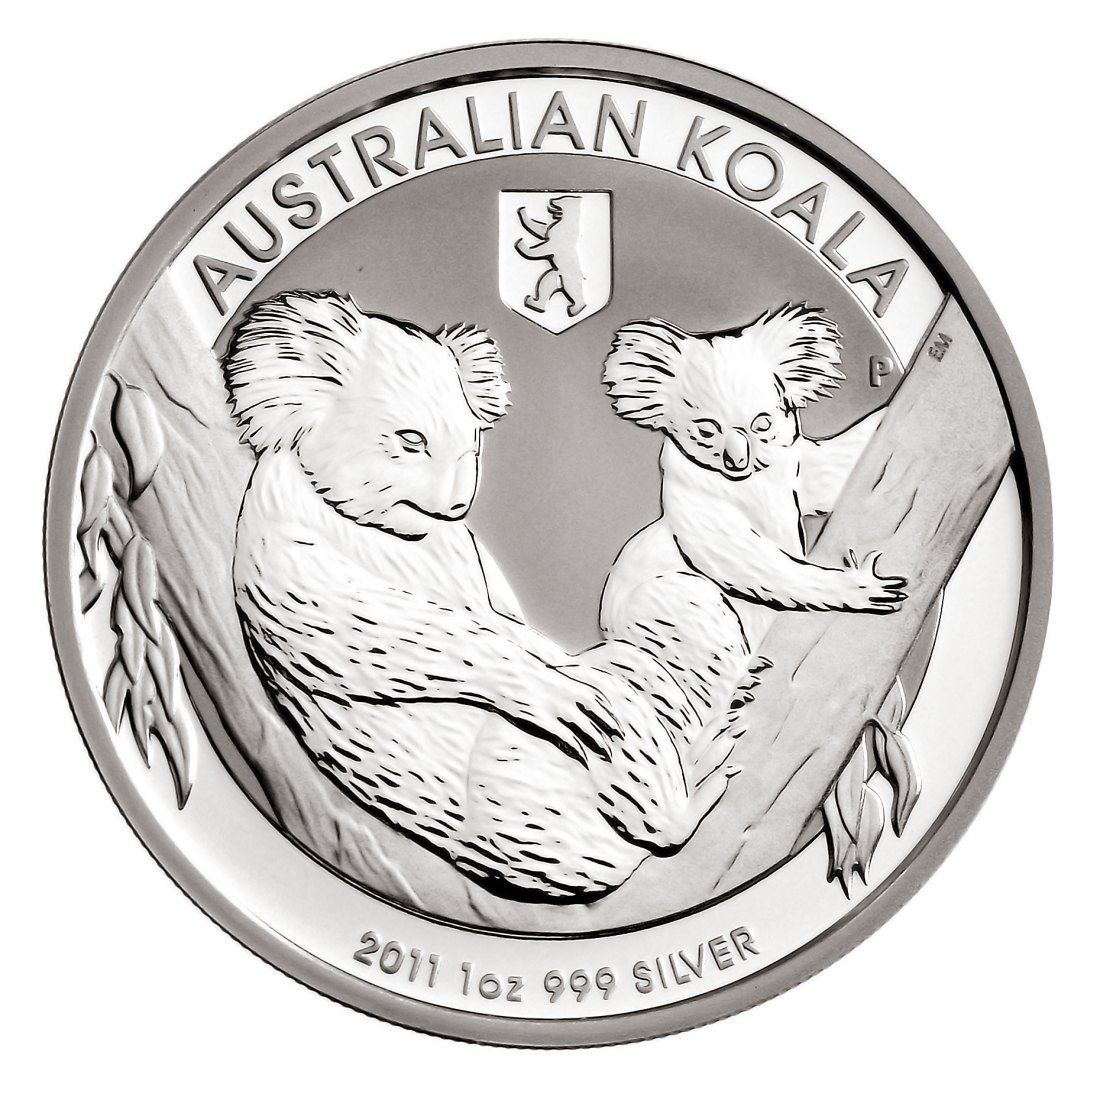  AUSTRALIEN 2011 KOALA PRIVY BERLIN 1 $ Silber st   